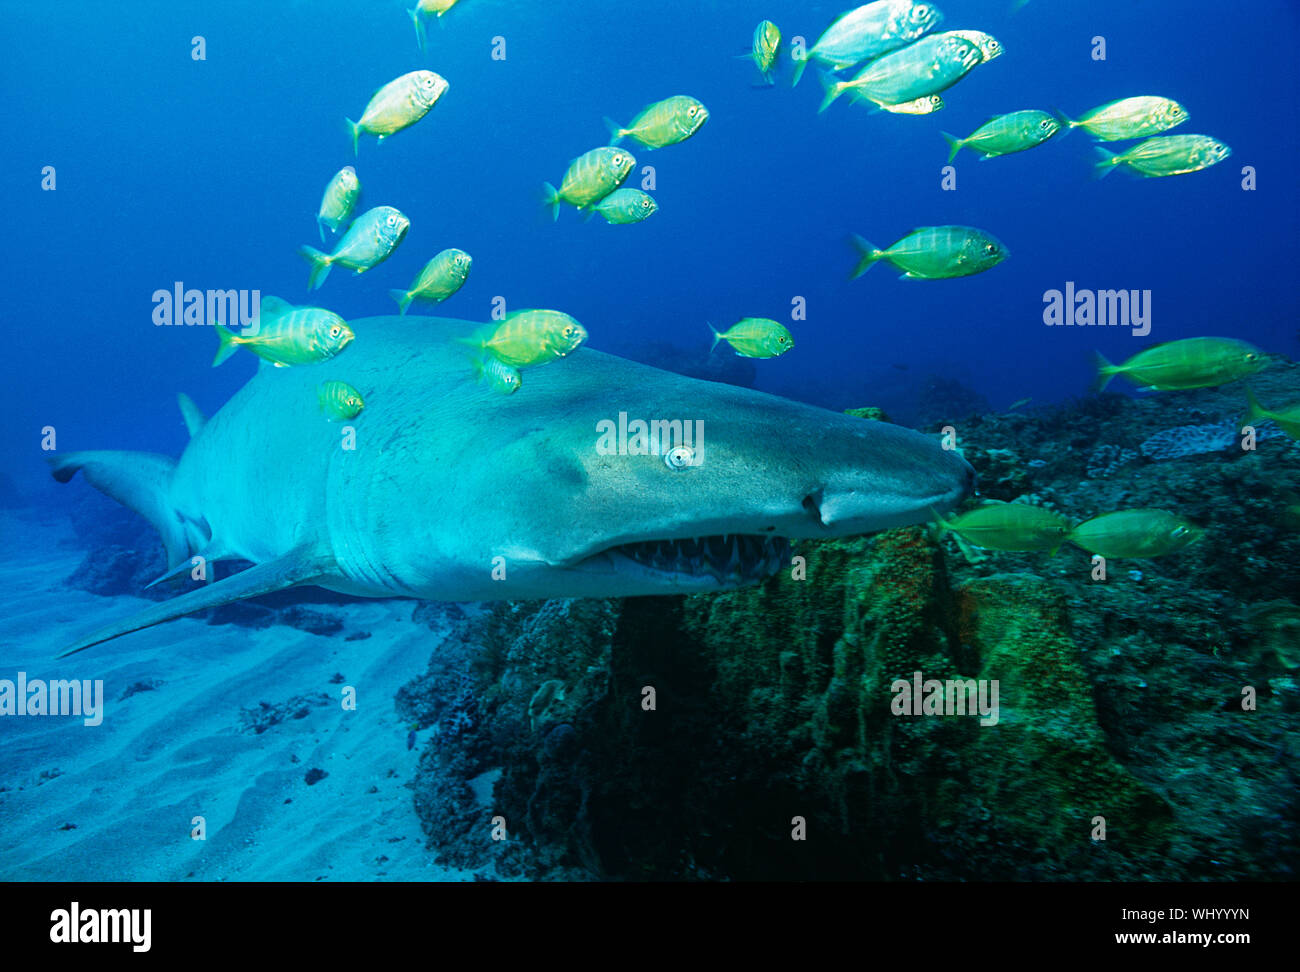 La baie de Sodwana, océan Indien, Afrique du Sud, sand tiger shark (Carcharias taurus) et doré (gnathanodon speciosus) carangue Banque D'Images